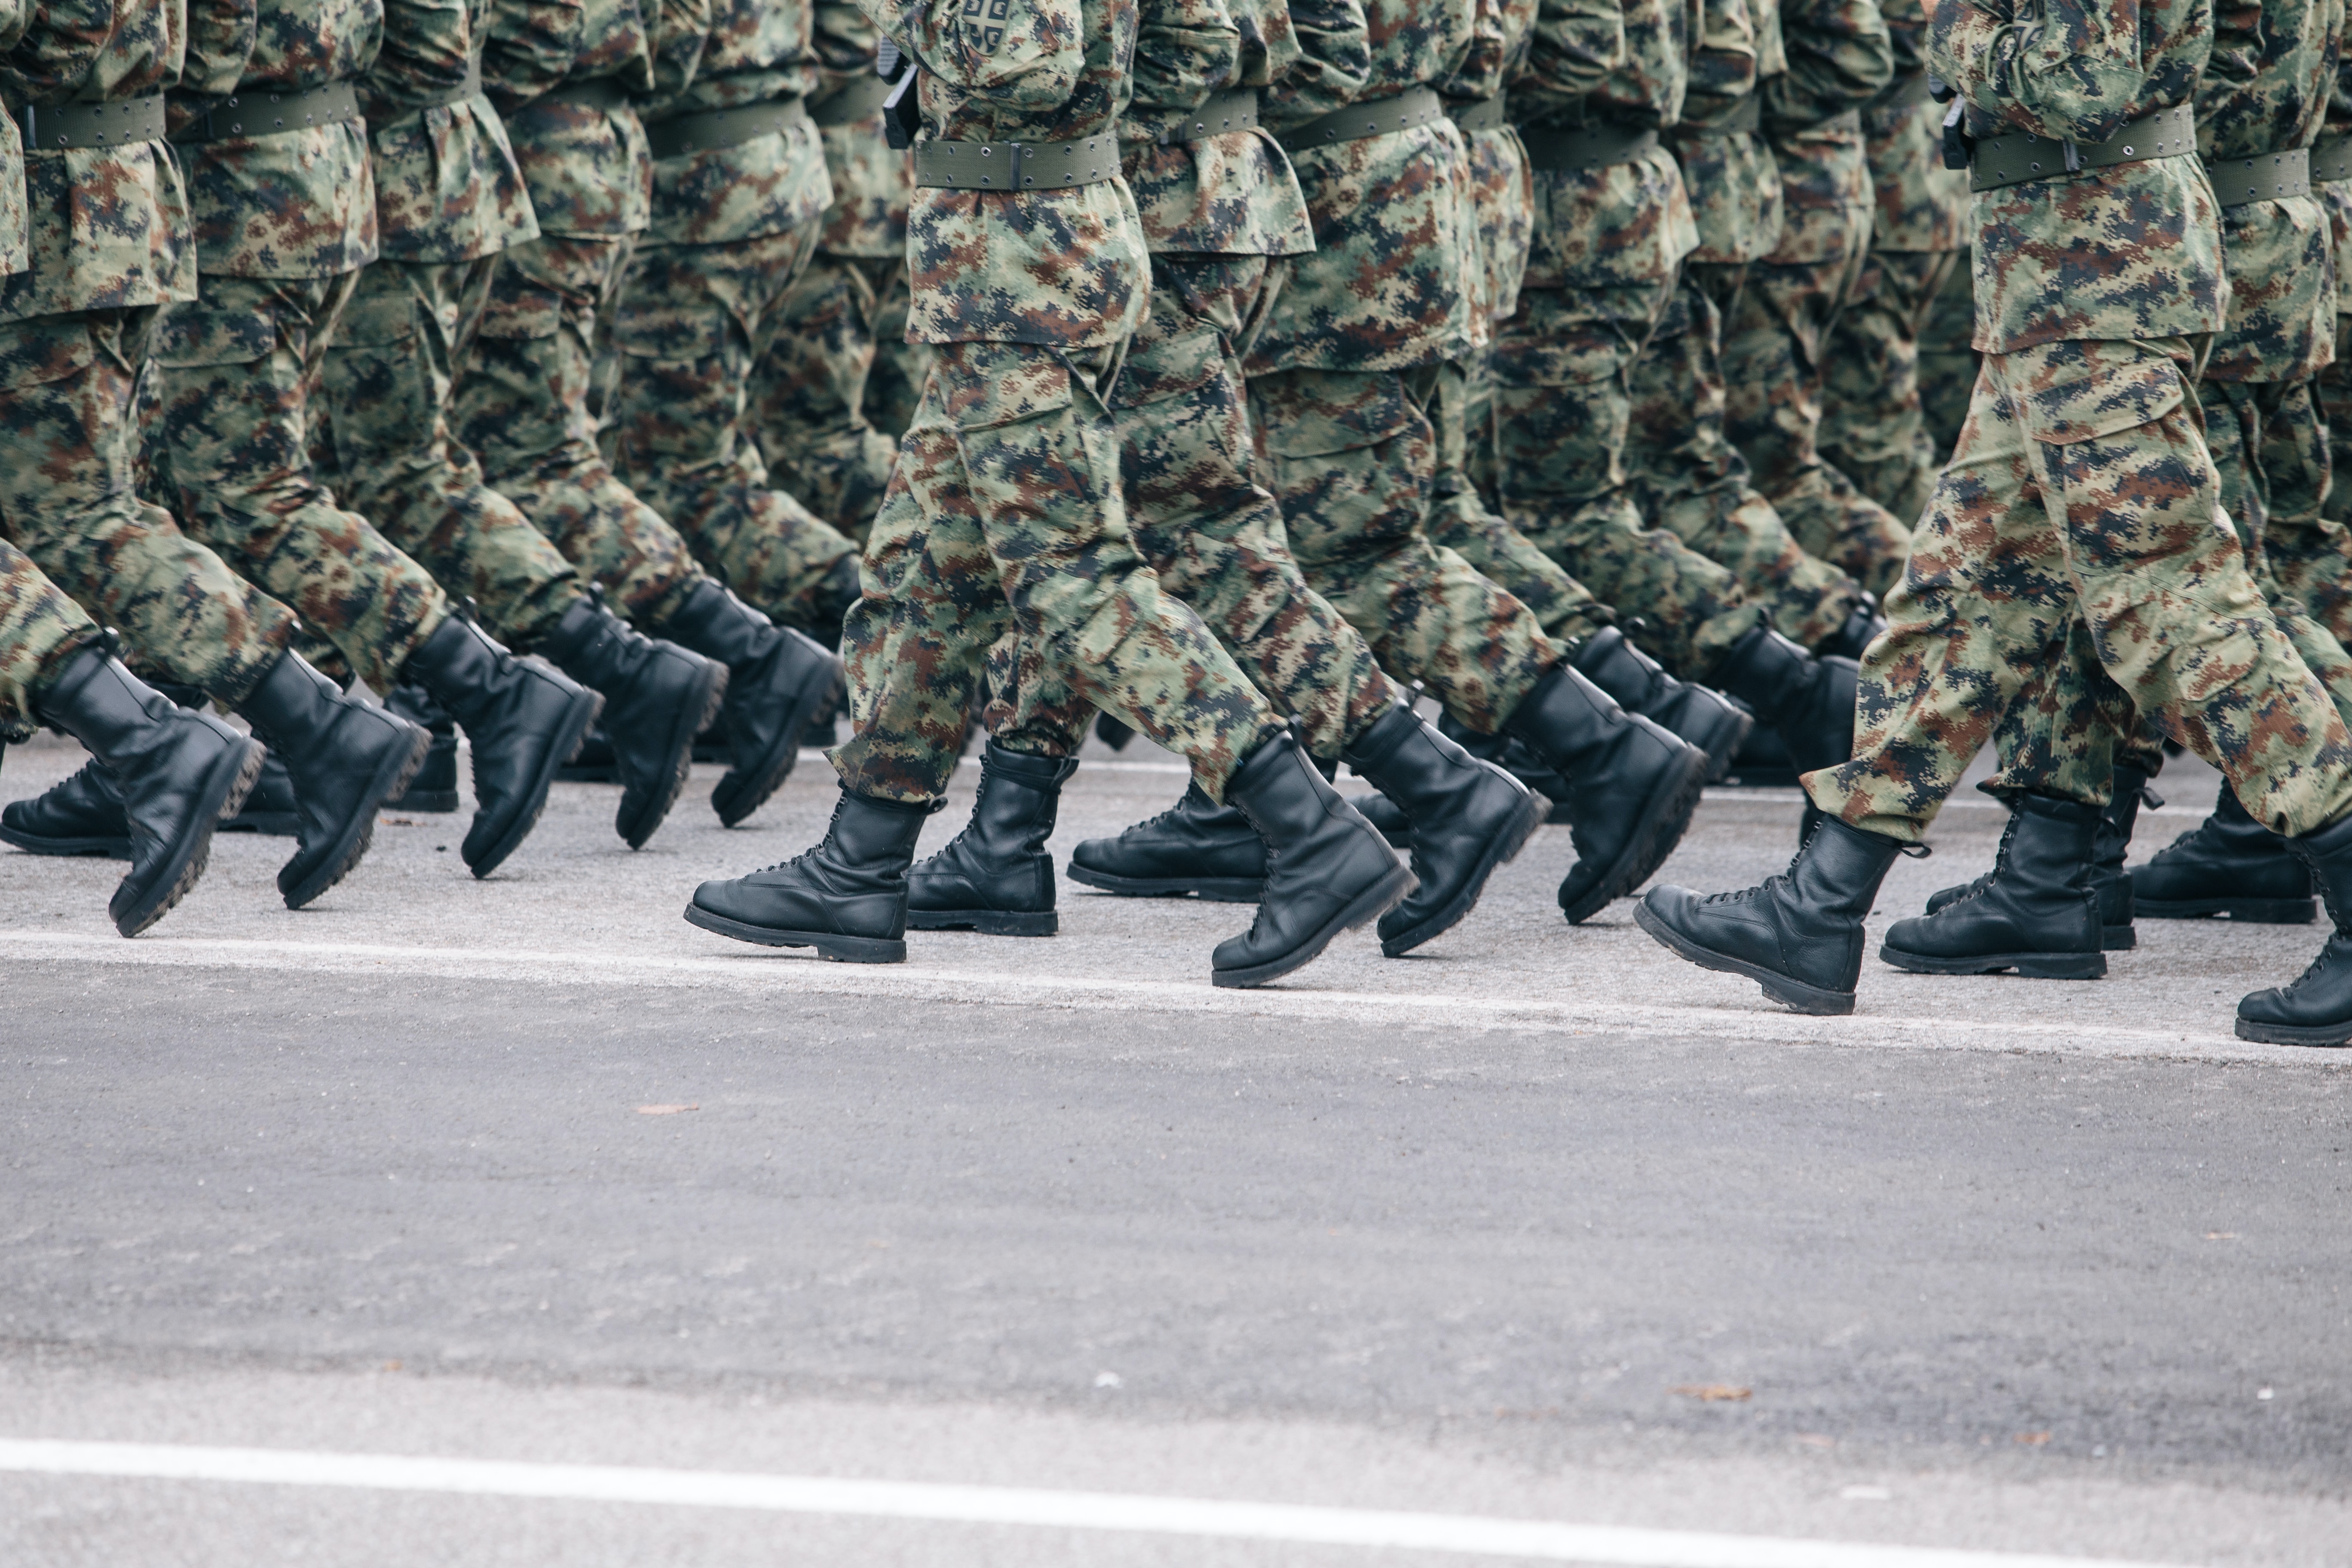  Odznaczenia wojskowe - jakie są i czym się różnią? 